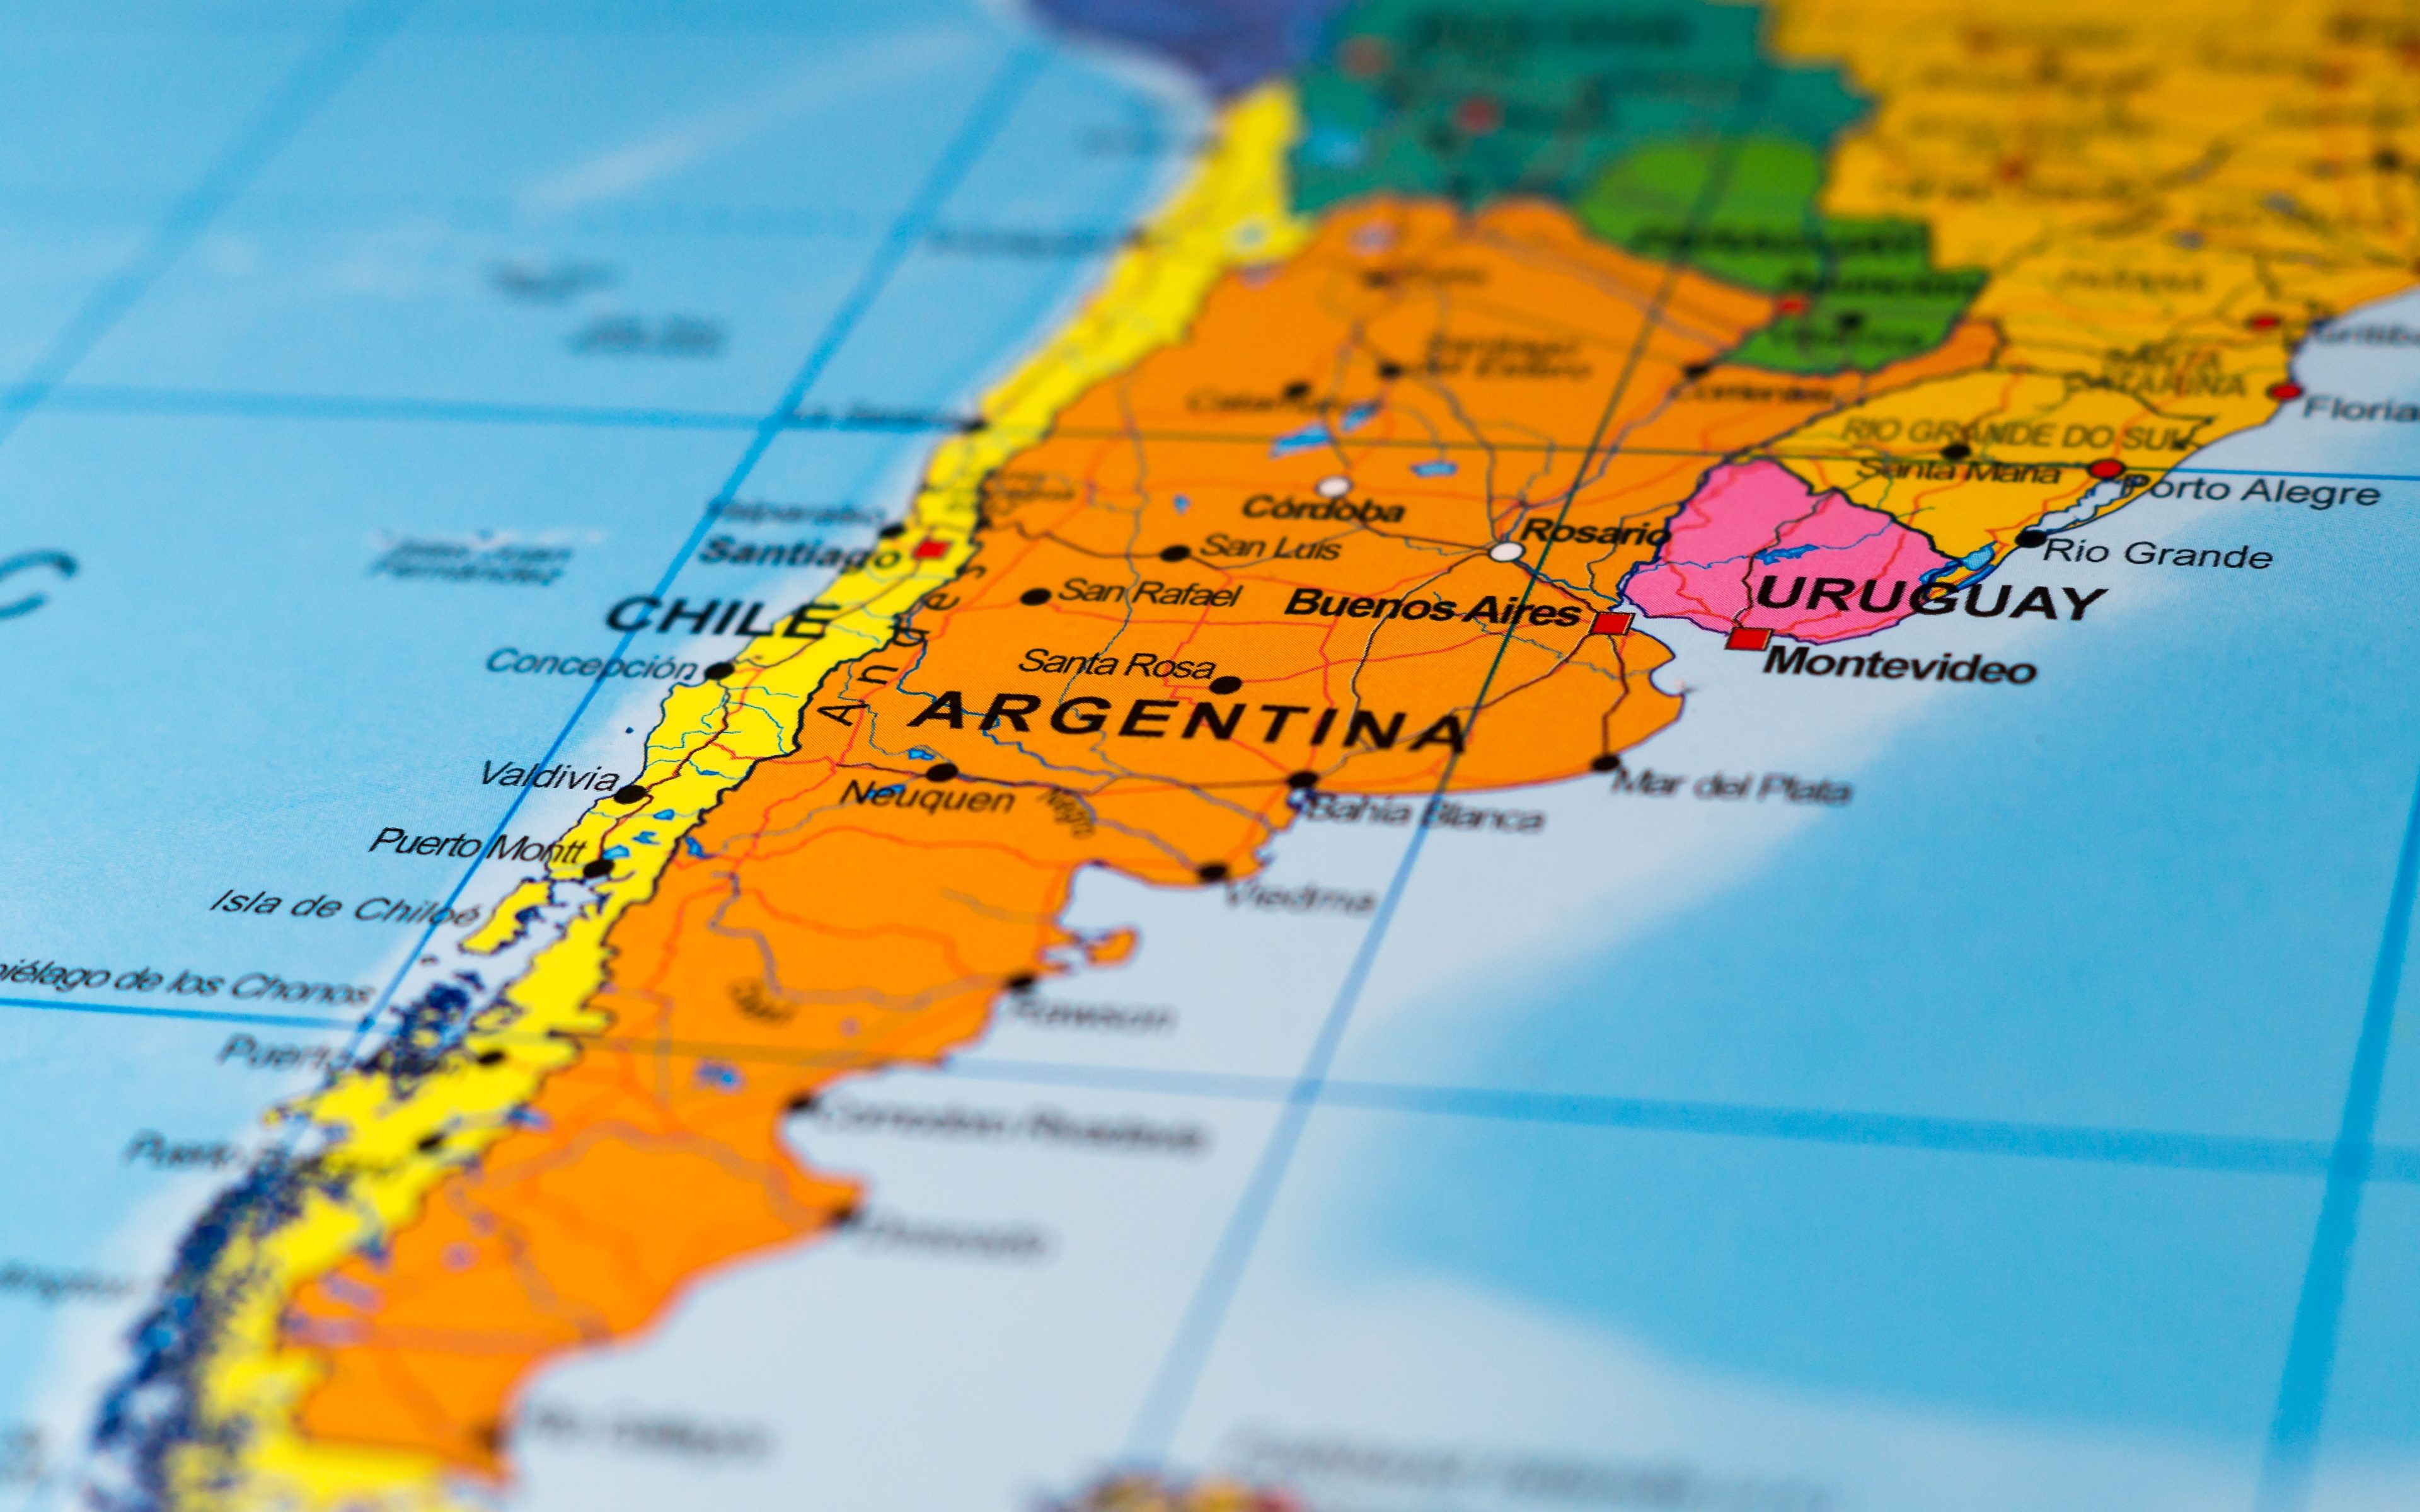 壁紙 3840x2400 アルゼンチン チリ 地理学 地図 South America ダウンロード 写真